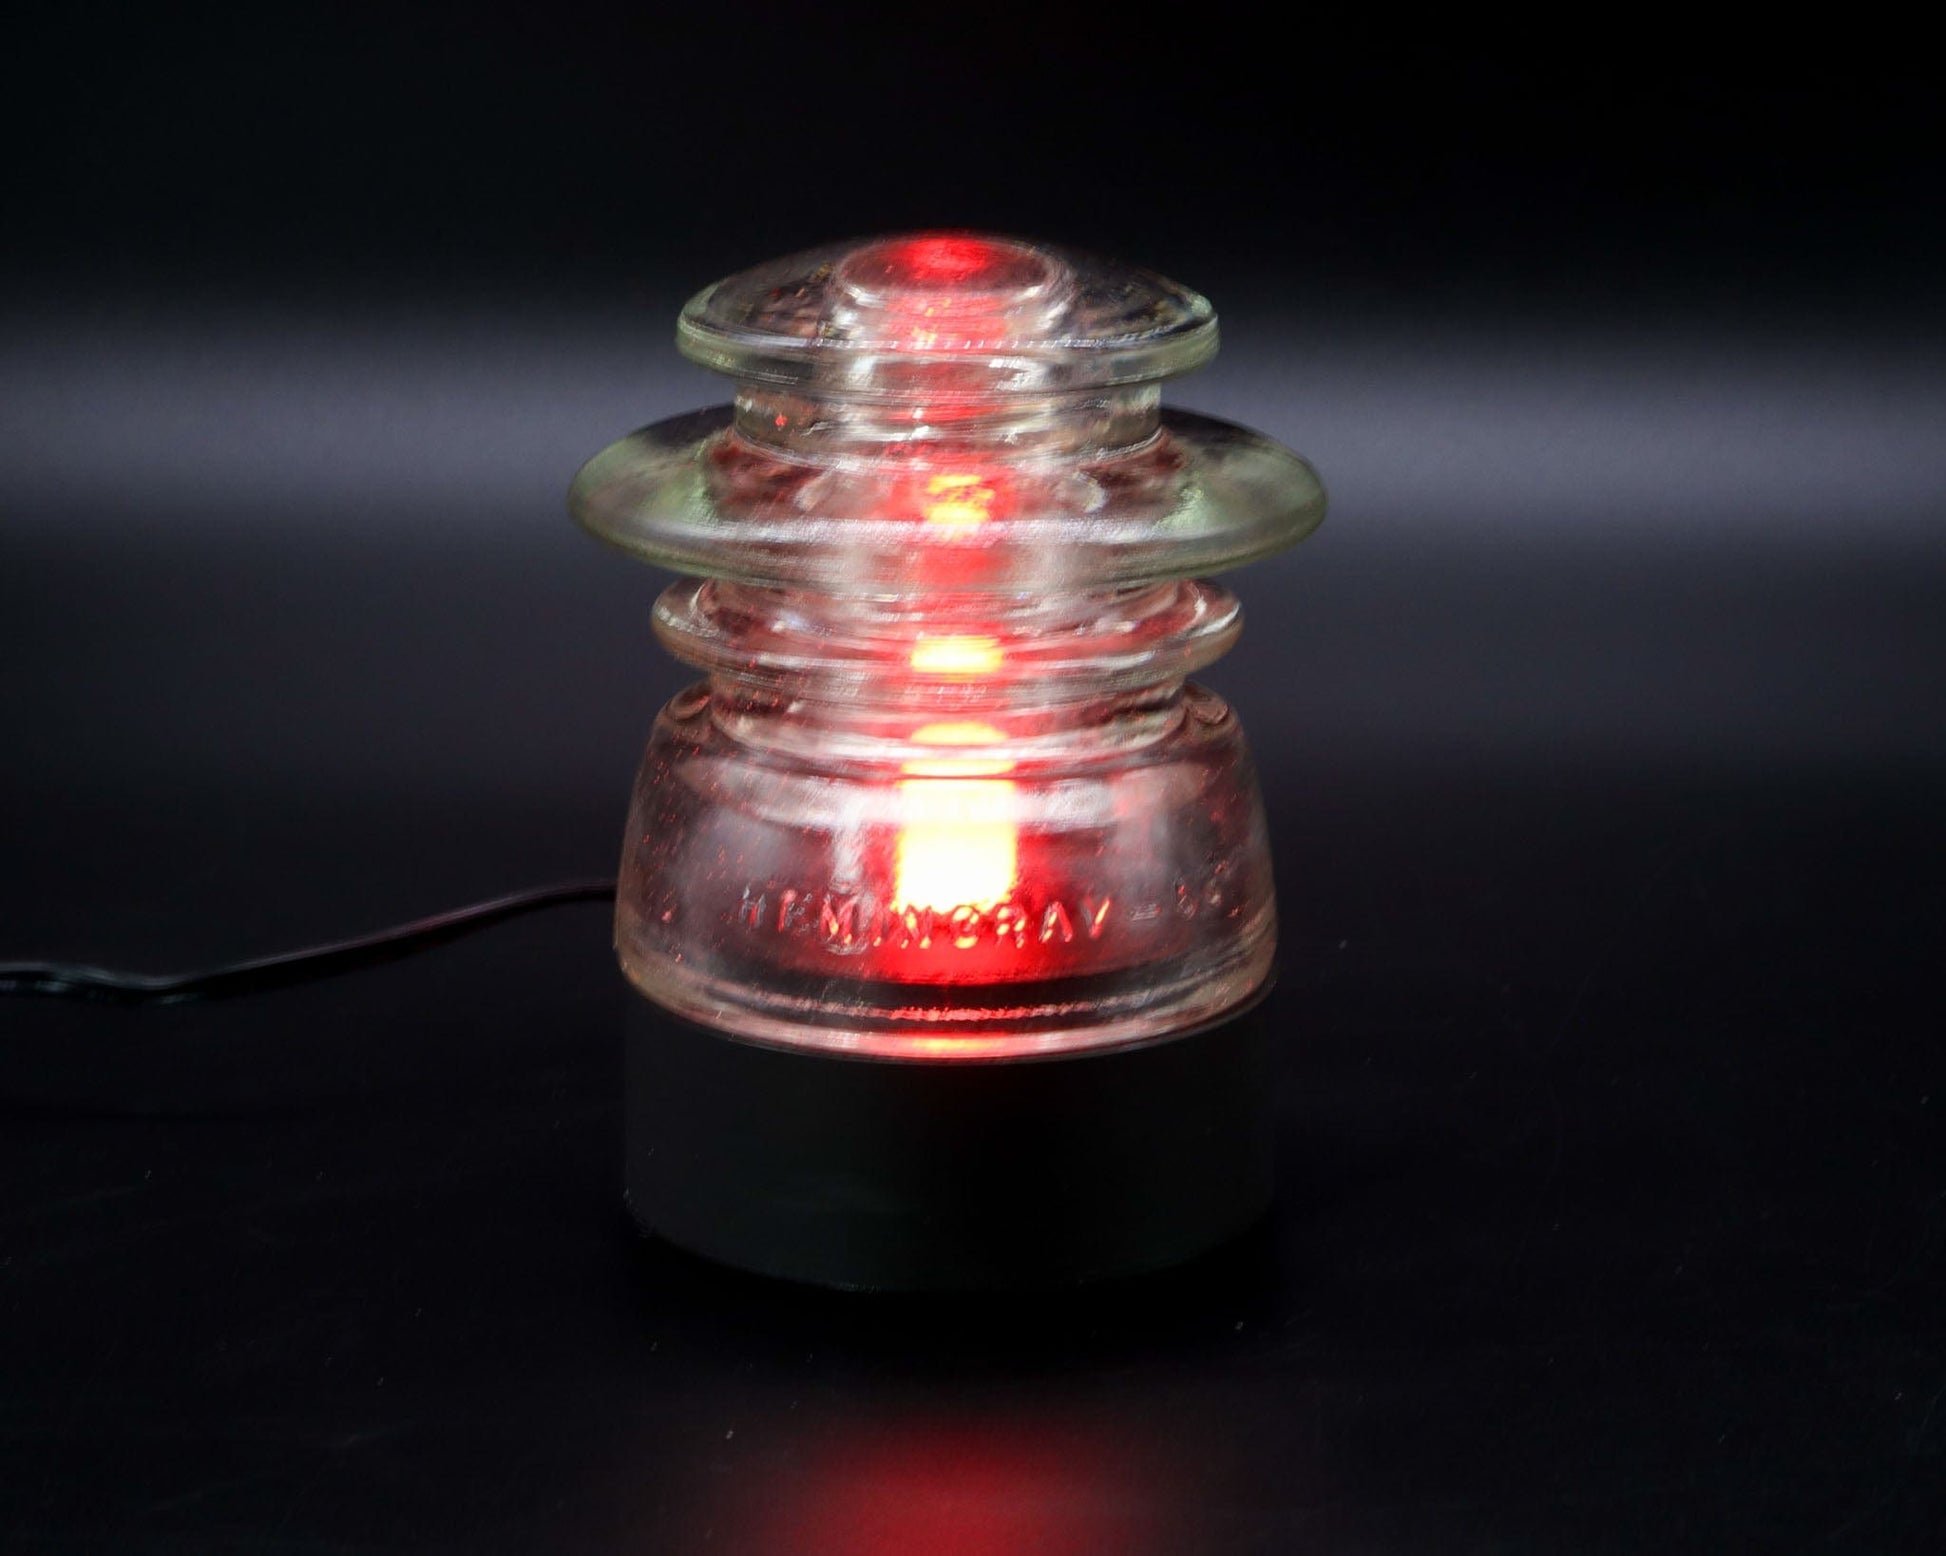 LightAndTimeArt Lamp base Lamp Base for "Hemingray-53" Glass Insulators, Industrial Lighting, Man Cave Decor